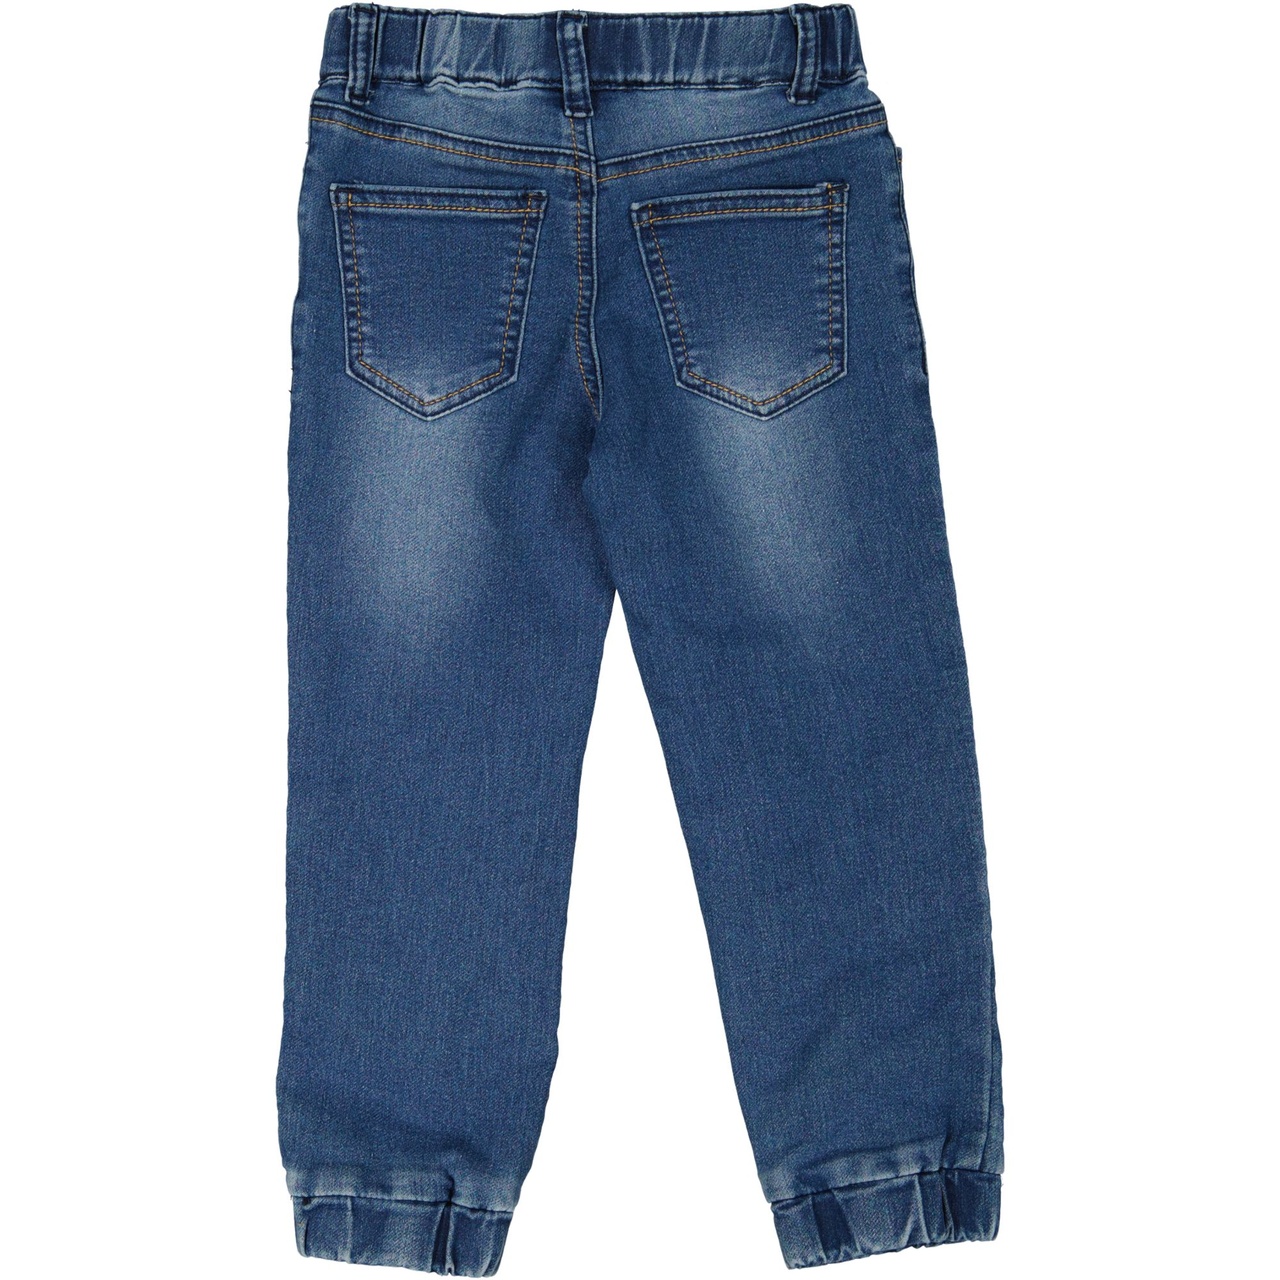 Unisex soft jeans Denim Sinine wash 86/92